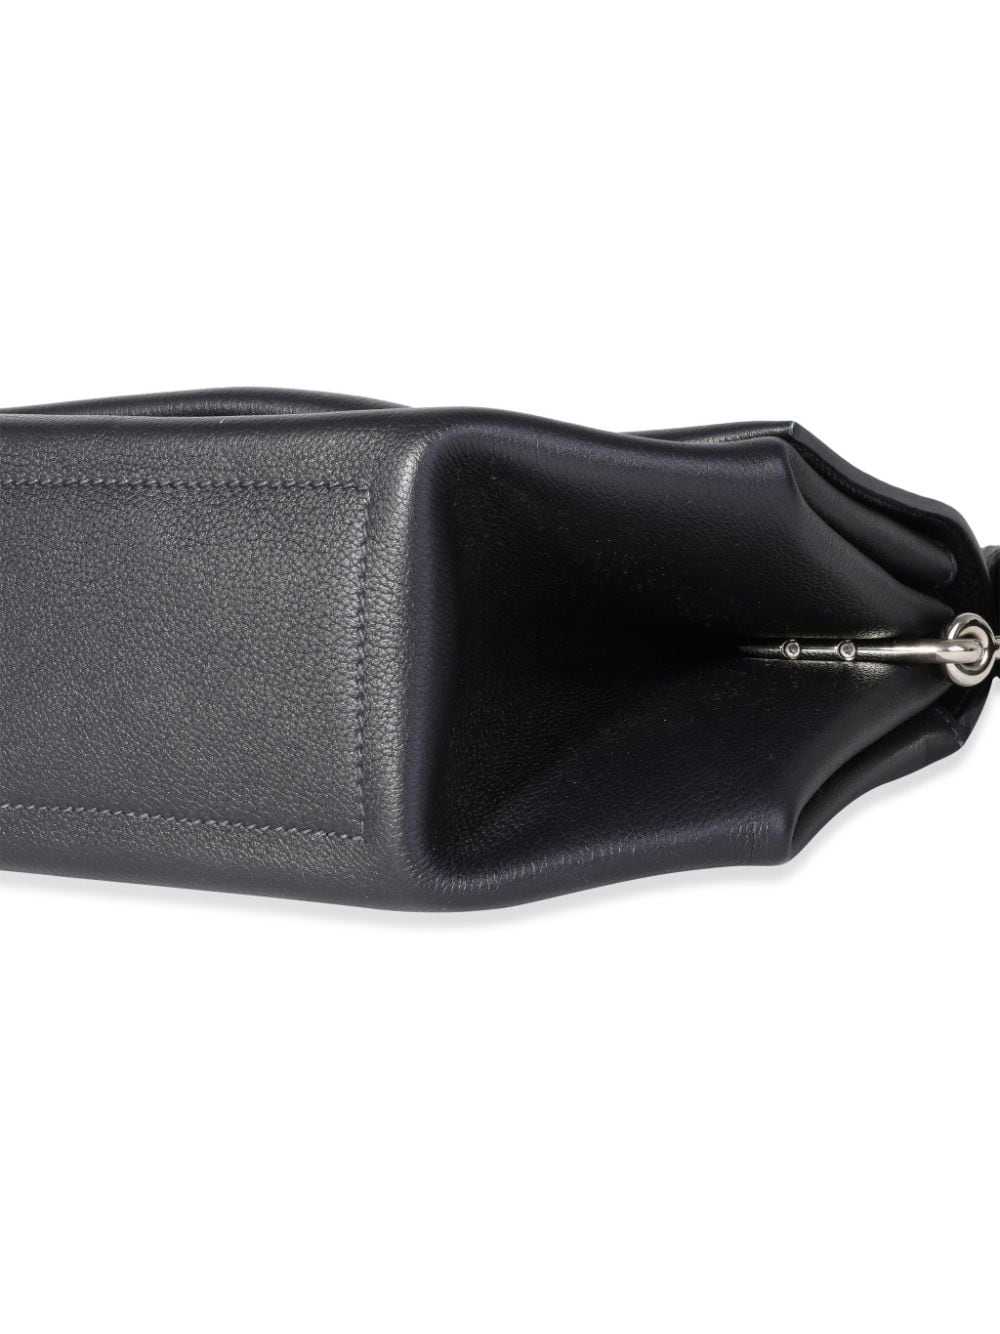 Hermès Pre-Owned 2017 Opli 24 shoulder bag - Black - image 4